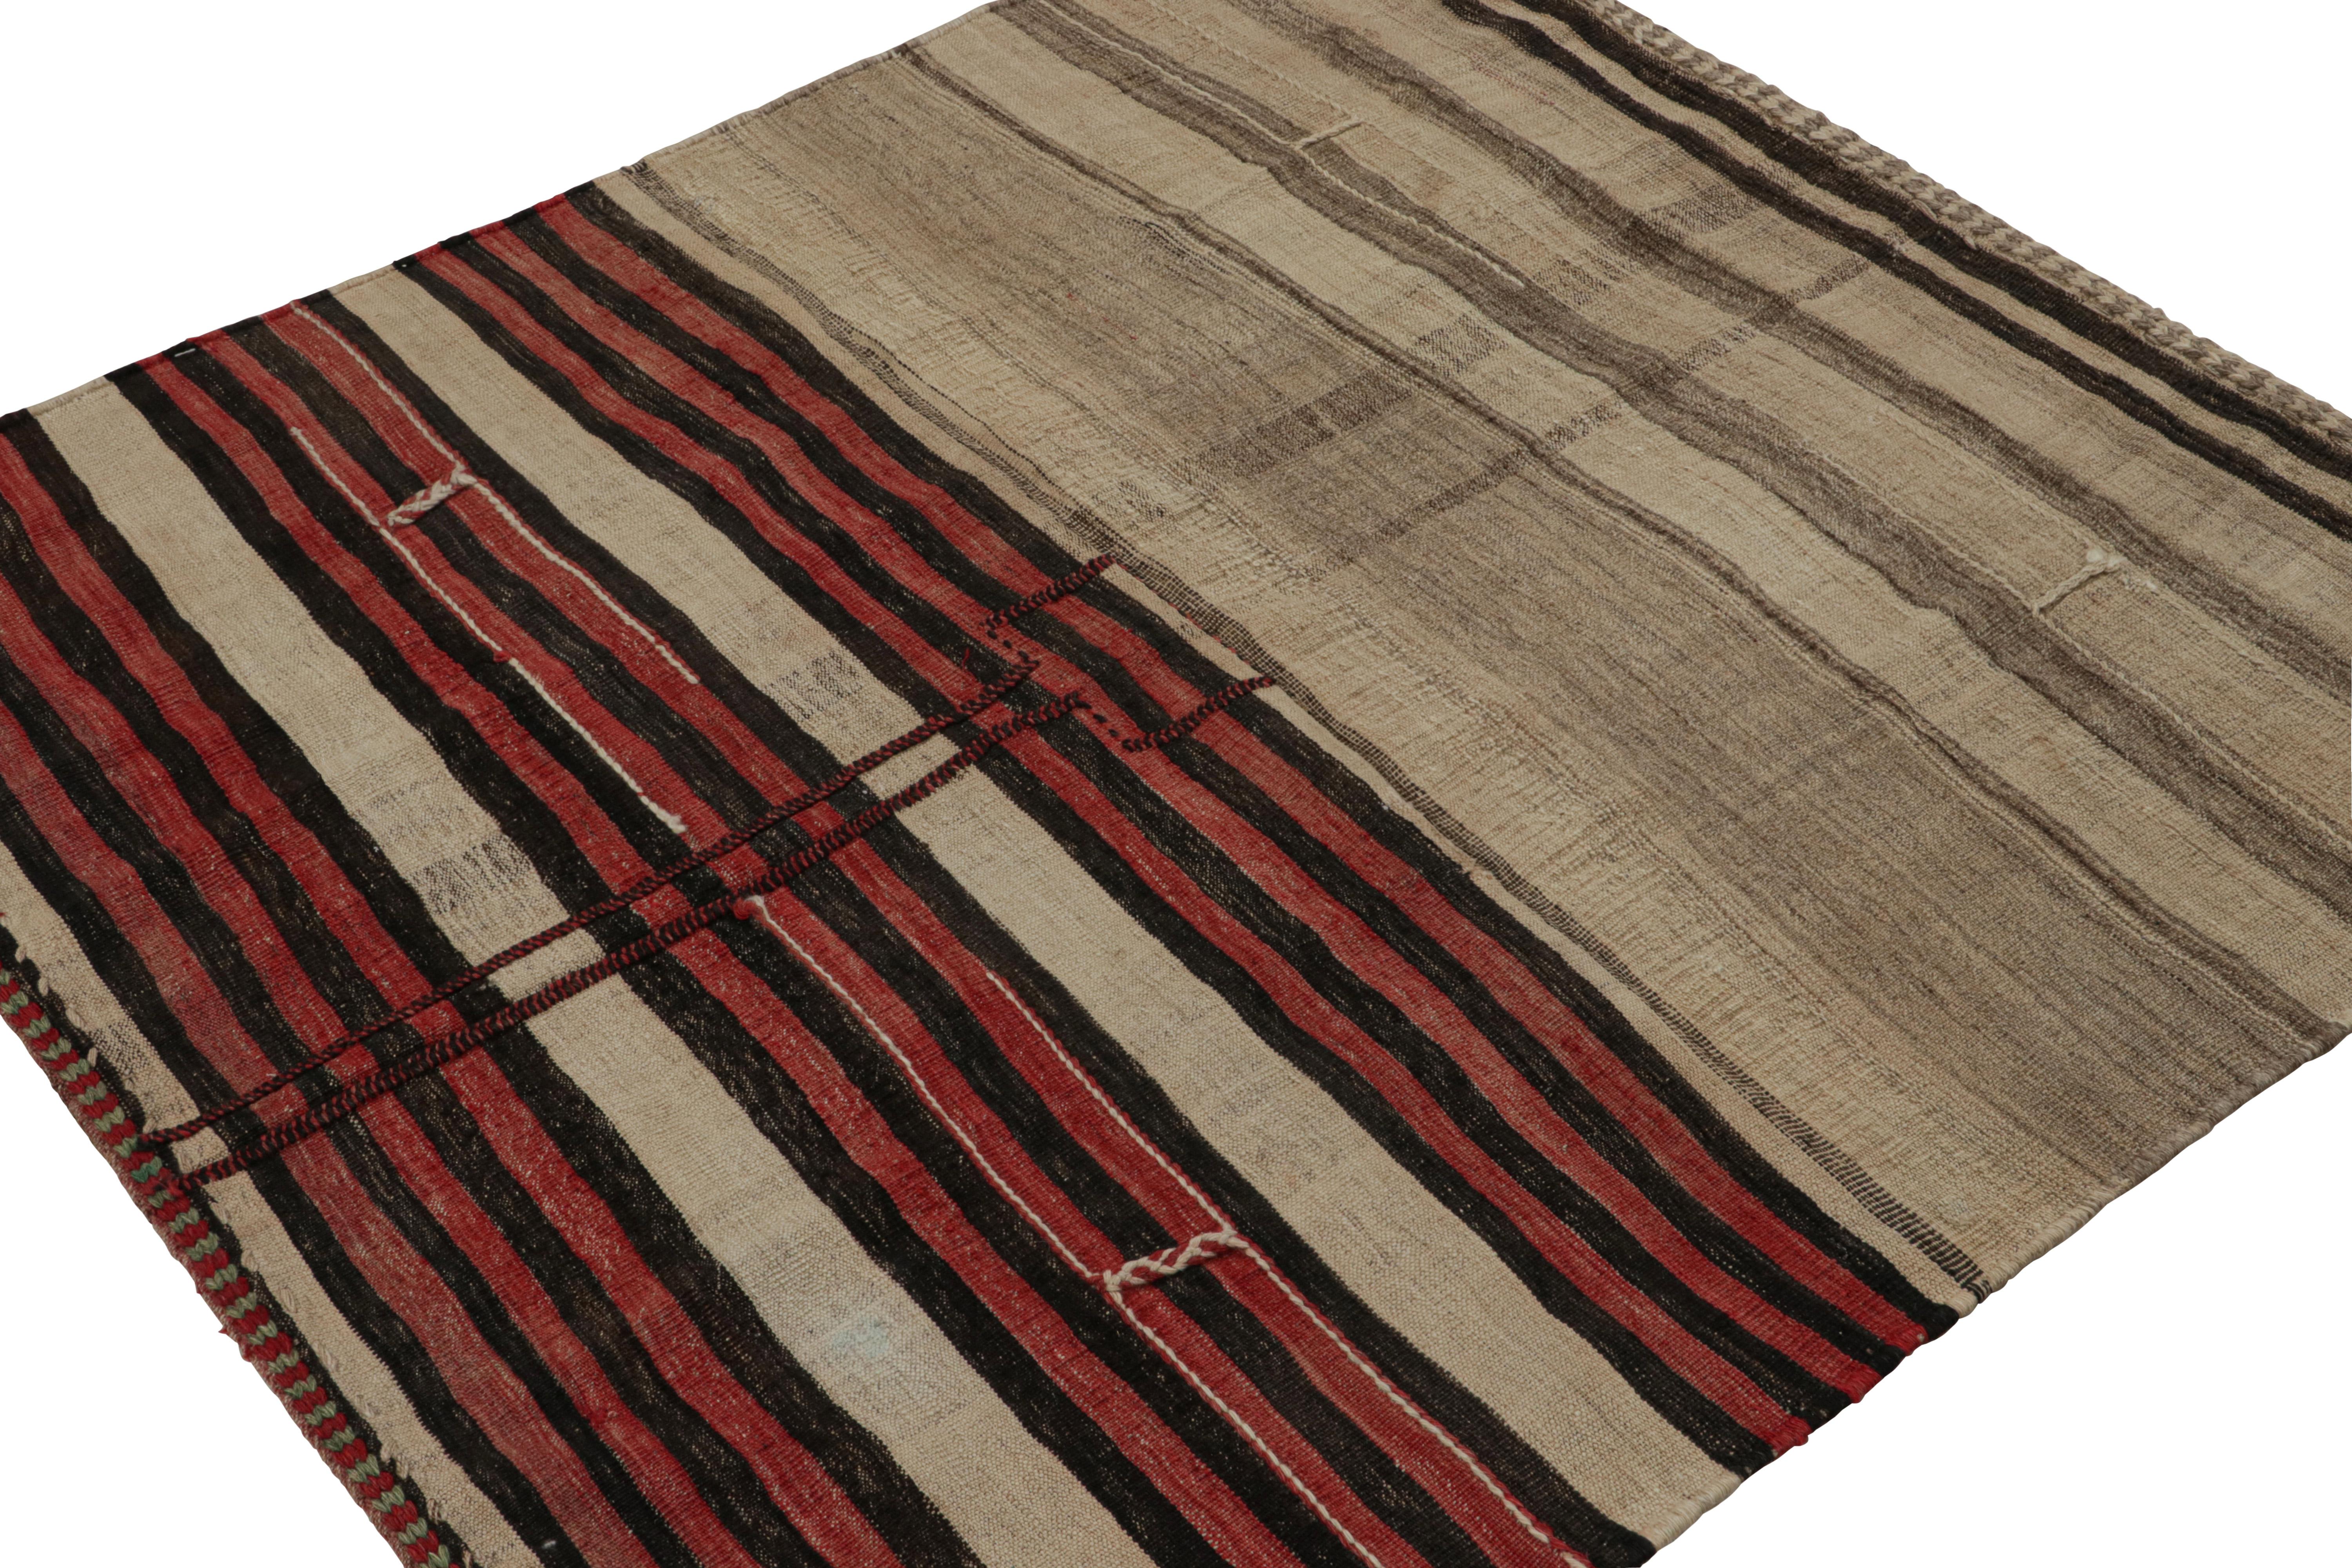 Exemplaire du design nomade, ce tapis kilim tribal afghan vintage 6x9, tissé à la main en laine avec un champ rouge, présente un design rare avec des motifs à grande échelle et des couleurs vibrantes. 

Sur le design : 

Les connaisseurs admireront